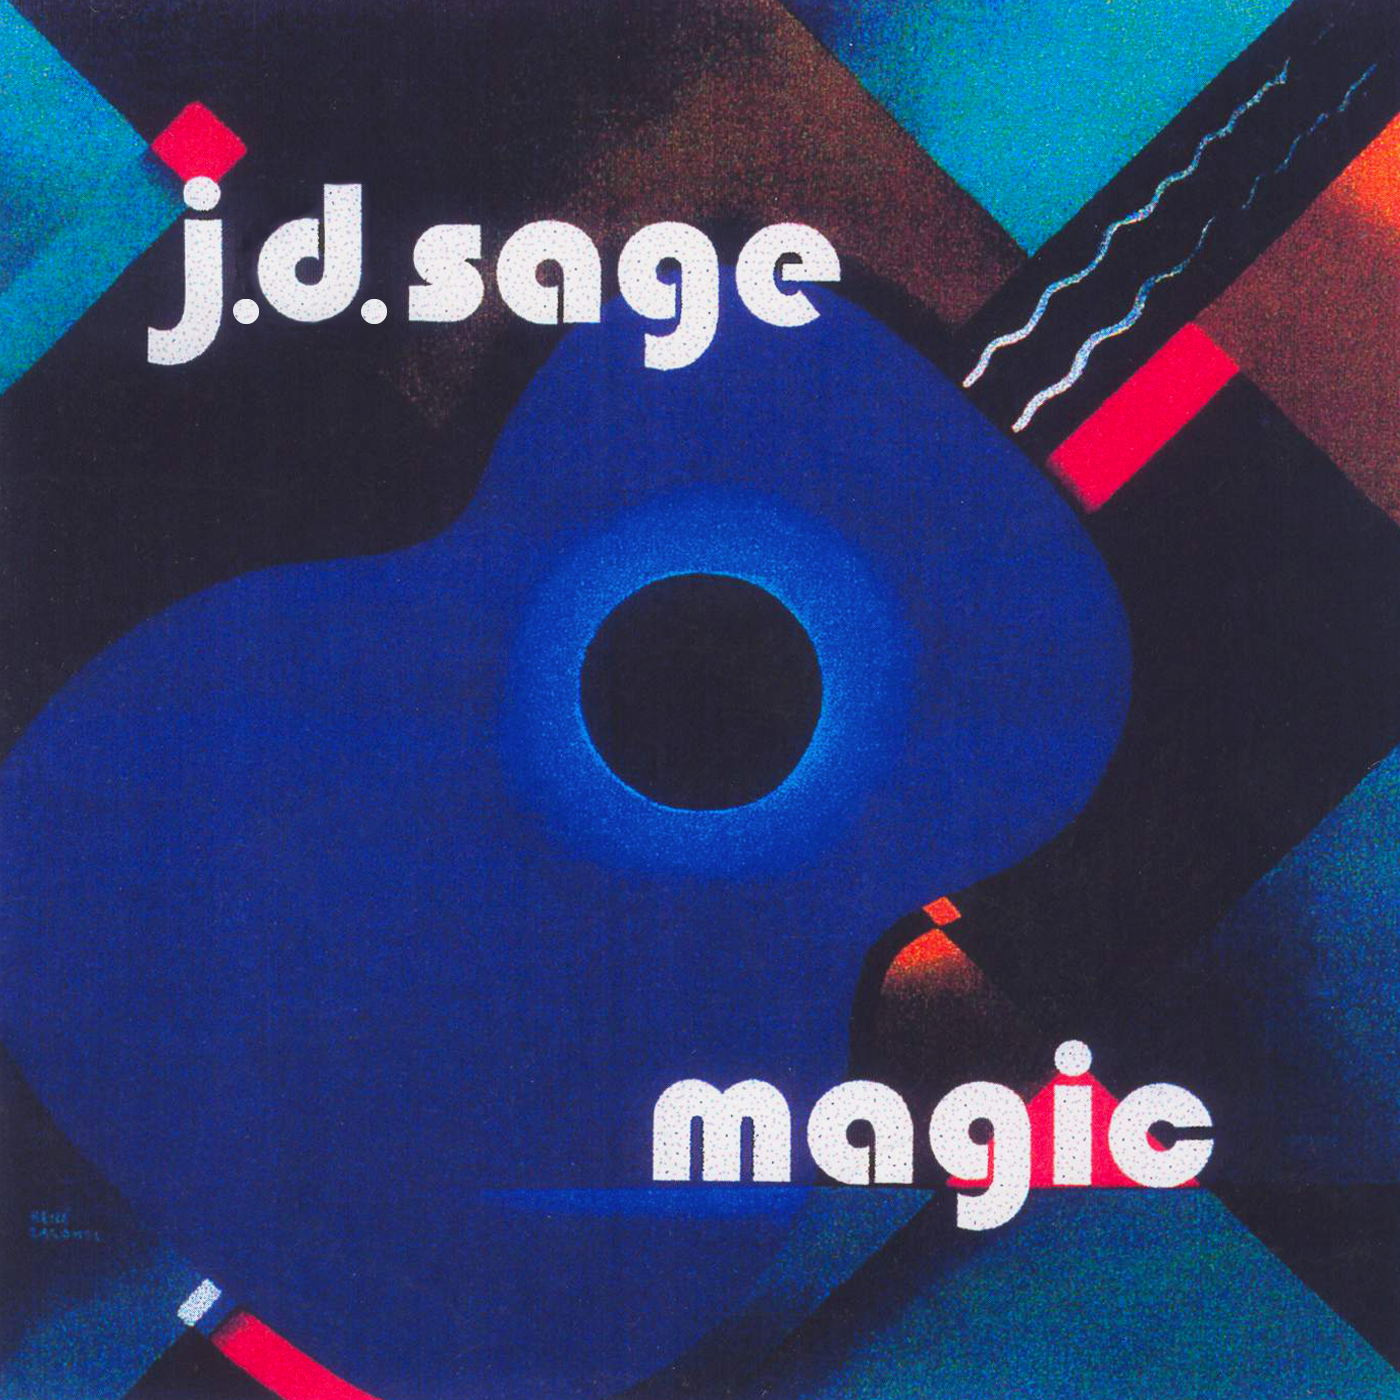 J.D.SAGE Troubadour Campanologist "Magic (A Dance)" single www.jdsage.comJ.D.SAGE Troubadour Magic (A Dance) www.jdsage.com